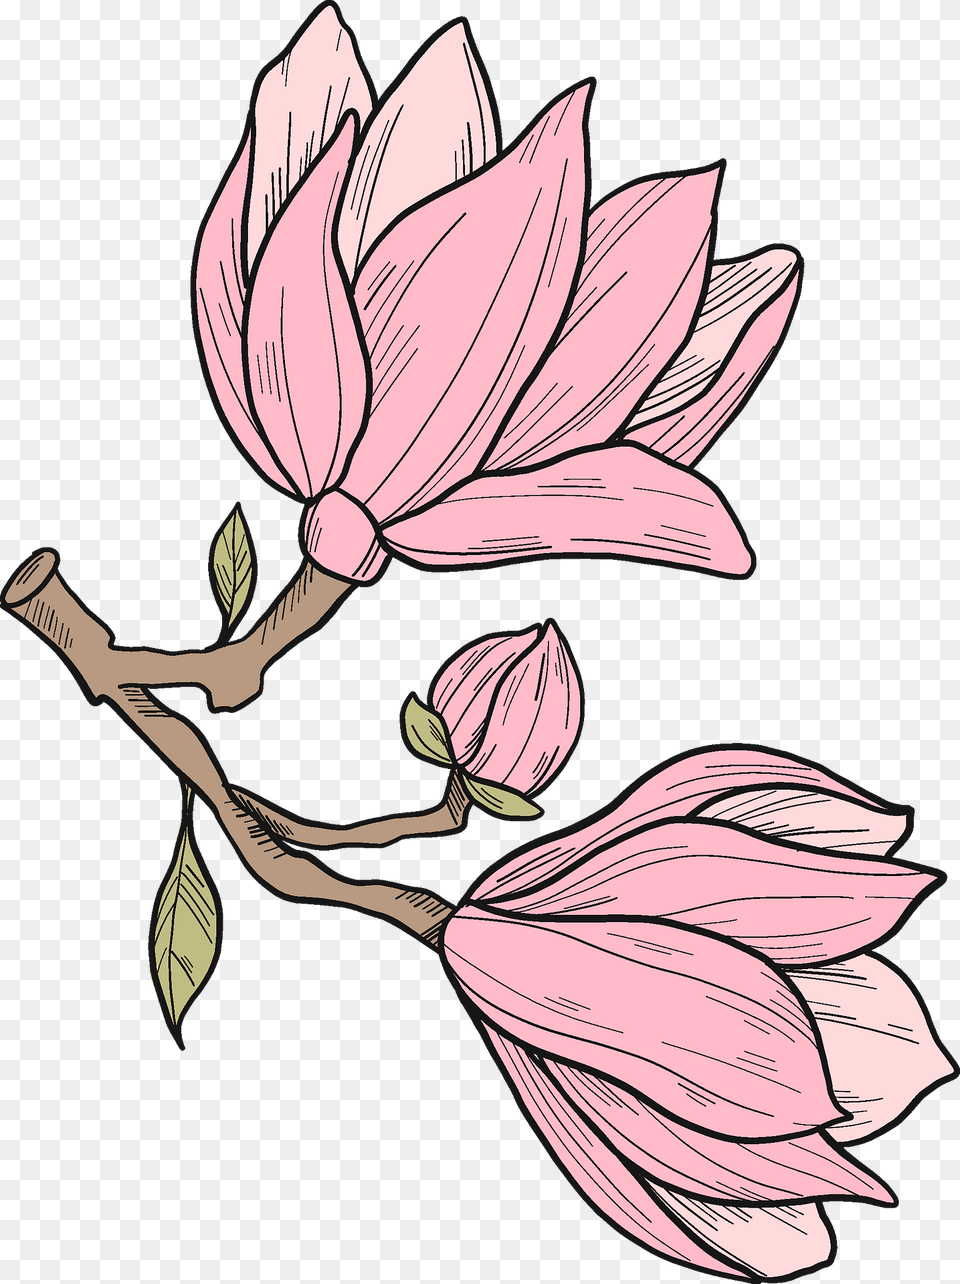 Magnolia Flowers Clipart, Flower, Plant, Petal, Art Free Png